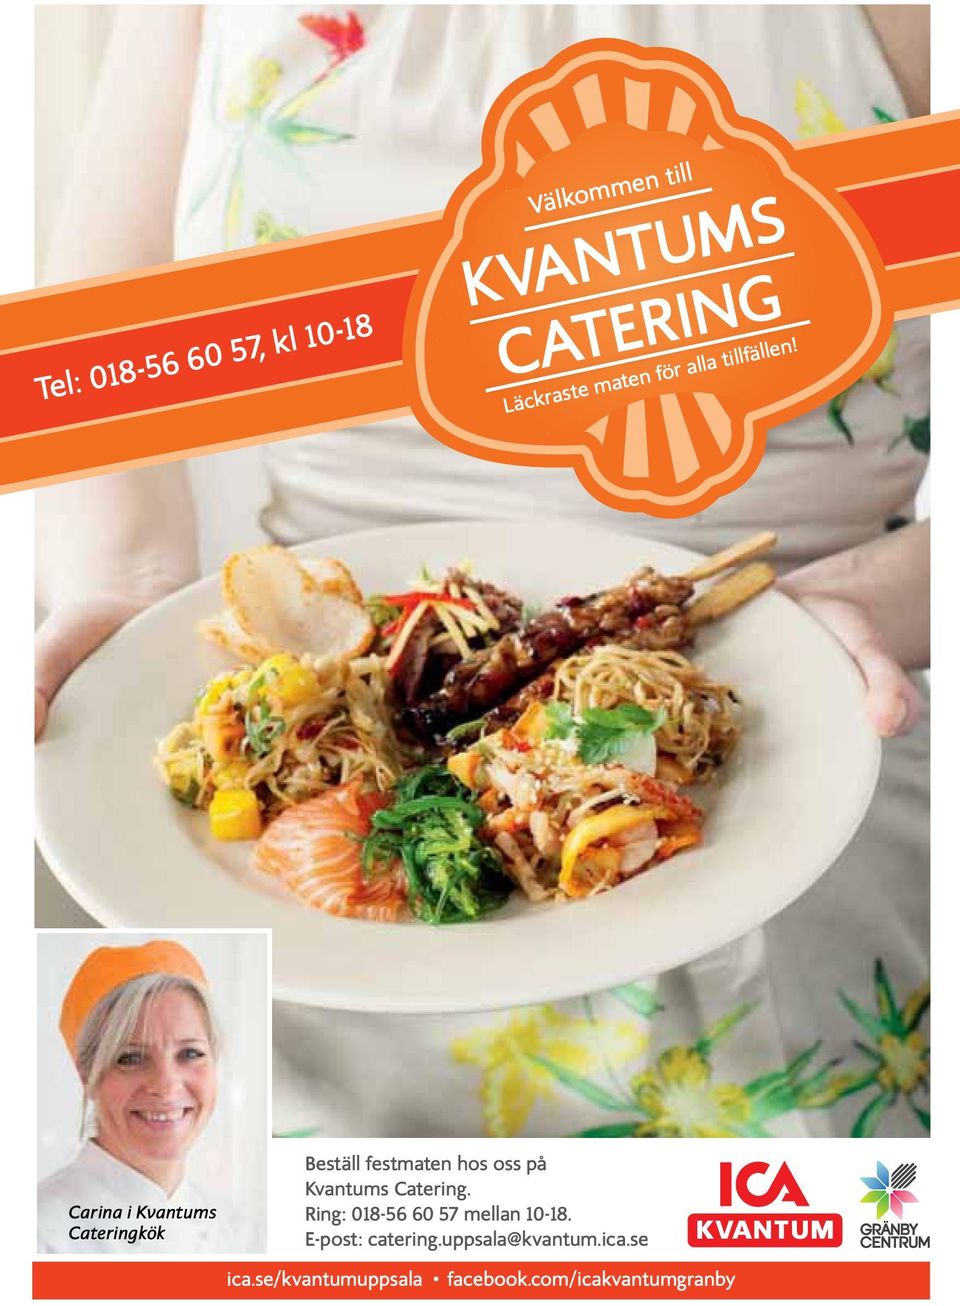 Carina i Kvantums Cateringkök Beställ festmaten hos oss på Kvantums